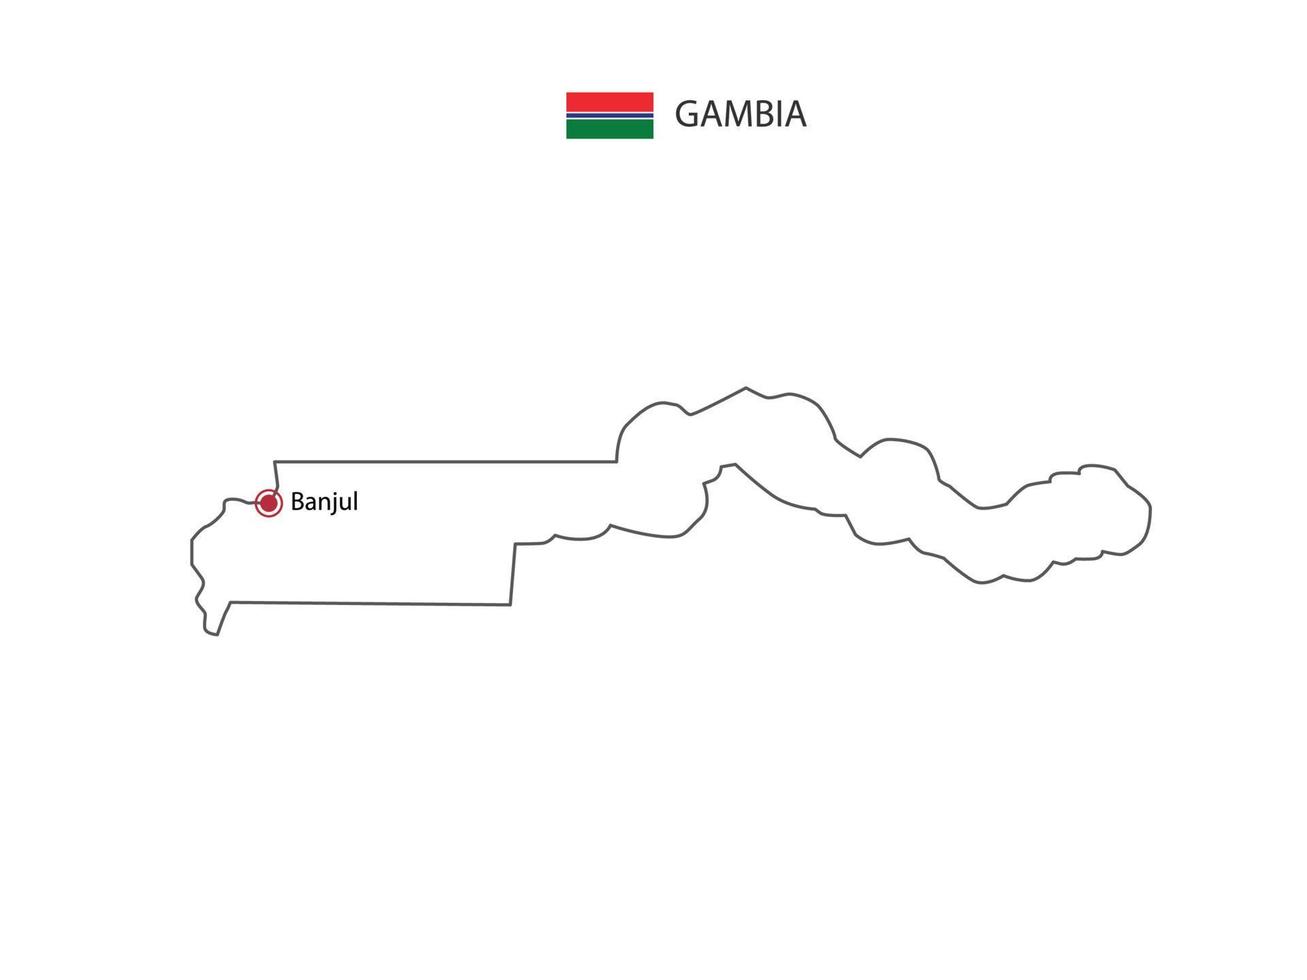 dibujar a mano el vector de línea negra delgada del mapa de gambia con la ciudad capital banjul sobre fondo blanco.